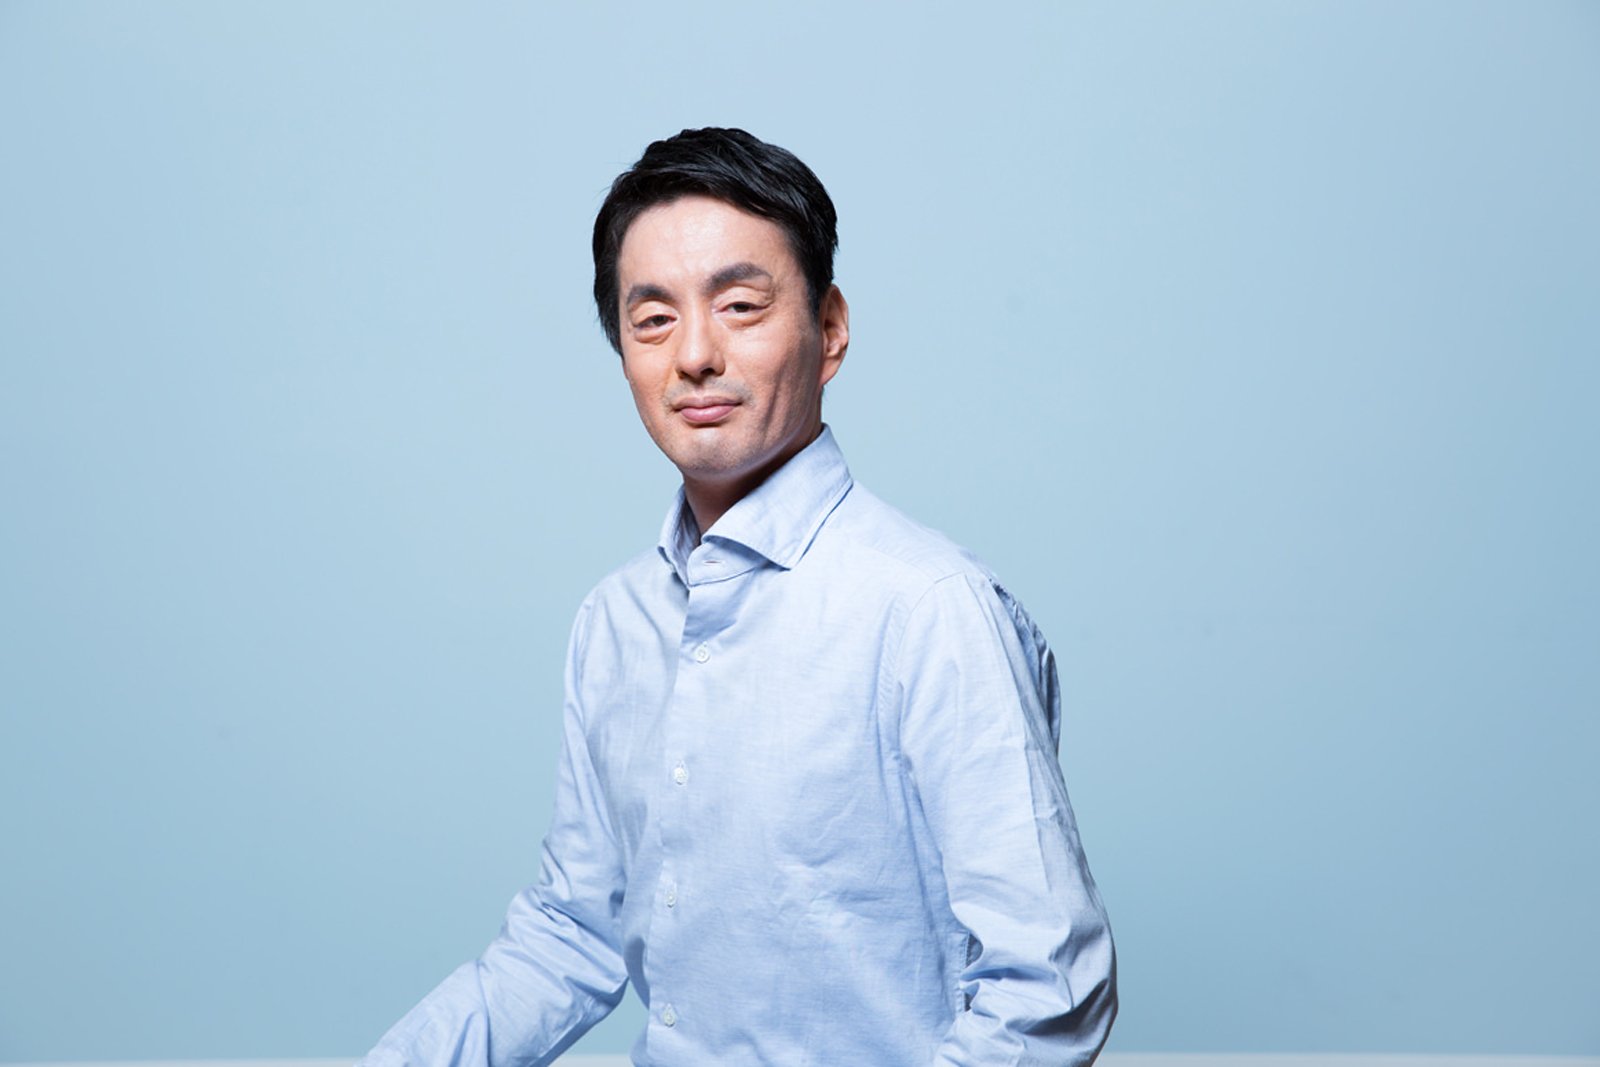 メルカリ創業者で代表取締役社長 CEOの山田進太郎氏